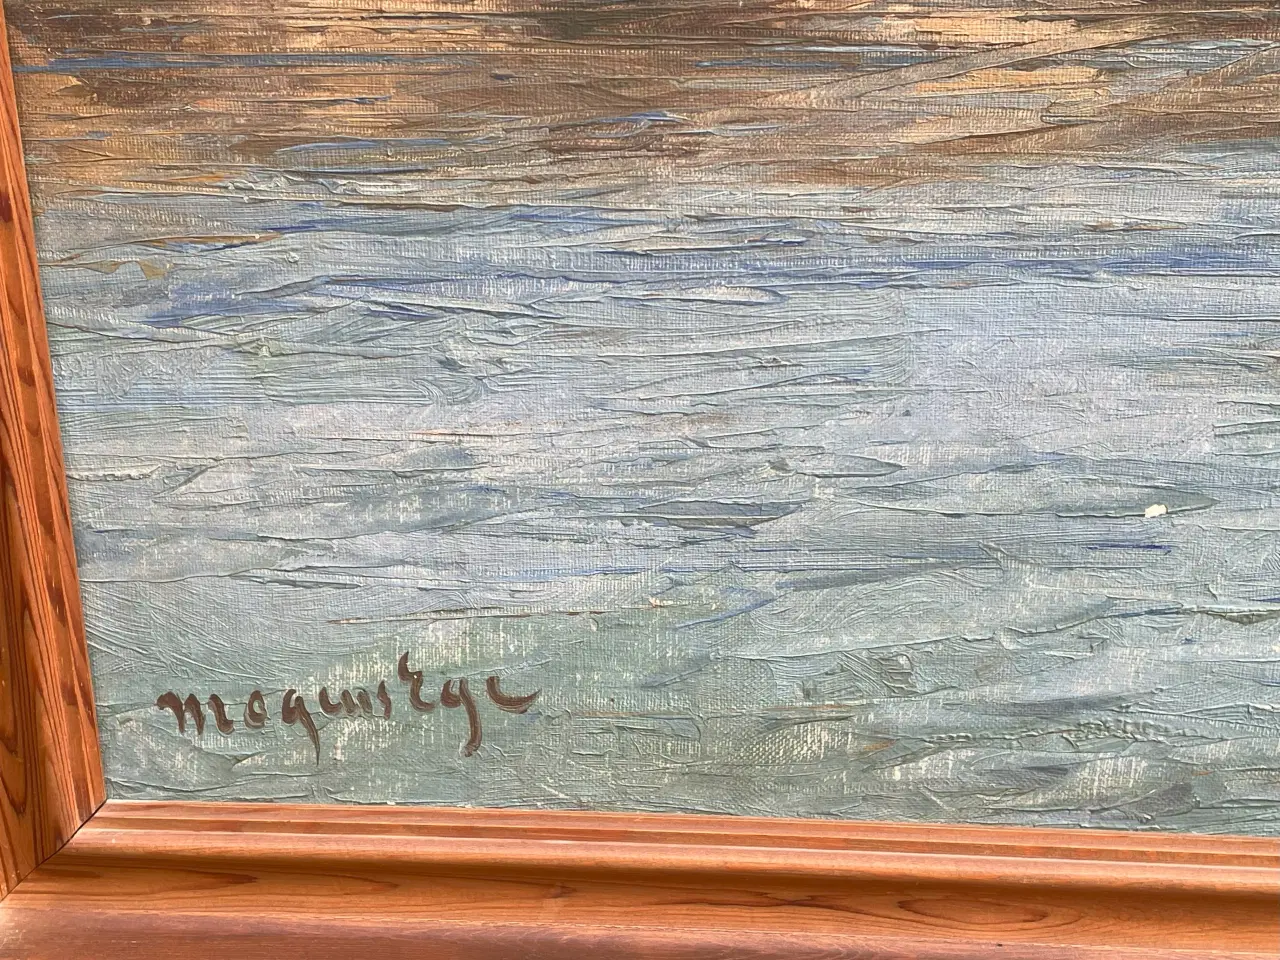 Billede 3 - Maleri af fiskebåd på havet ved Hammershus